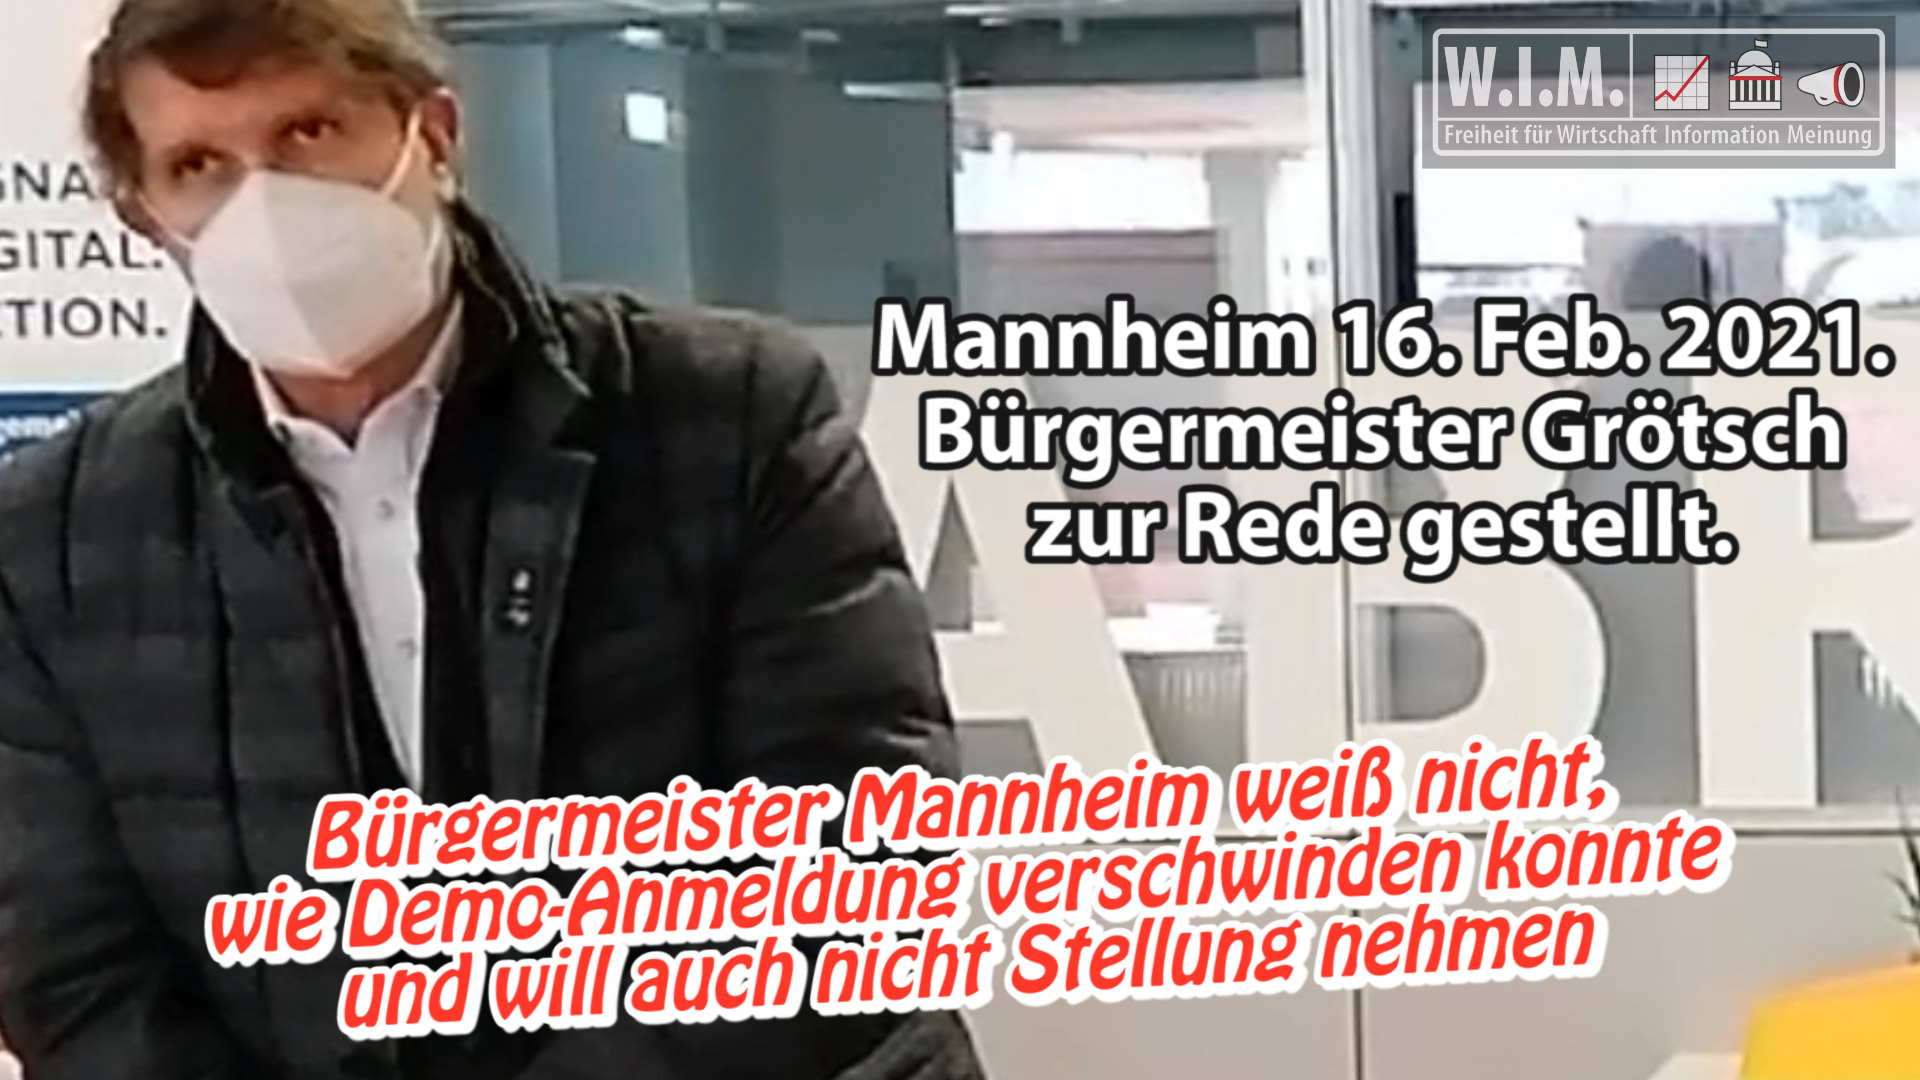 Bürgermeister Mannheim weiß nicht, wie Demo-Anmeldung verschwand. Will auch nicht Stellung nehmen